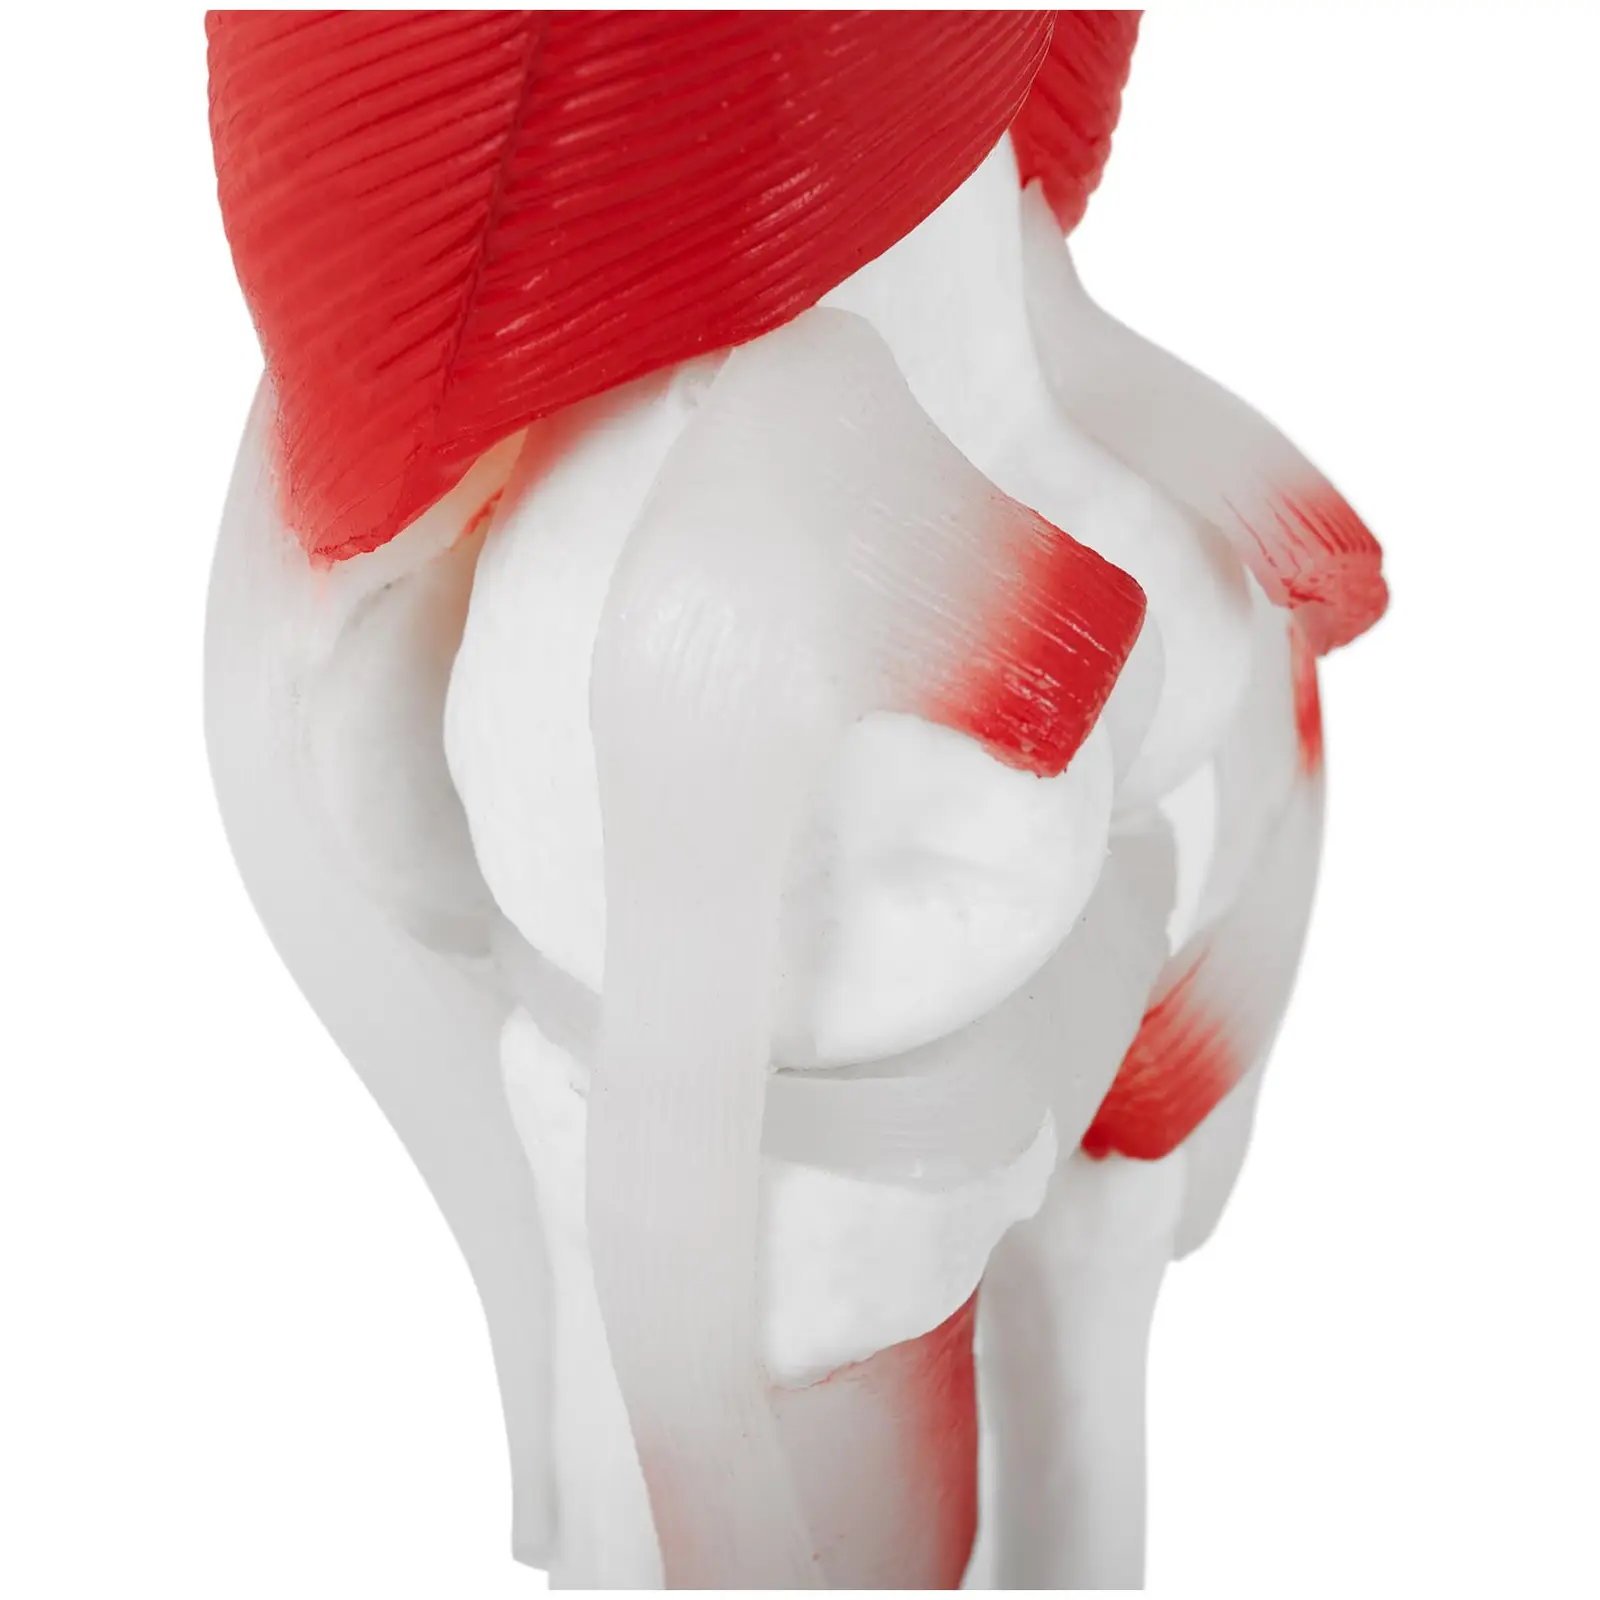 Staw kolanowy - model anatomiczny